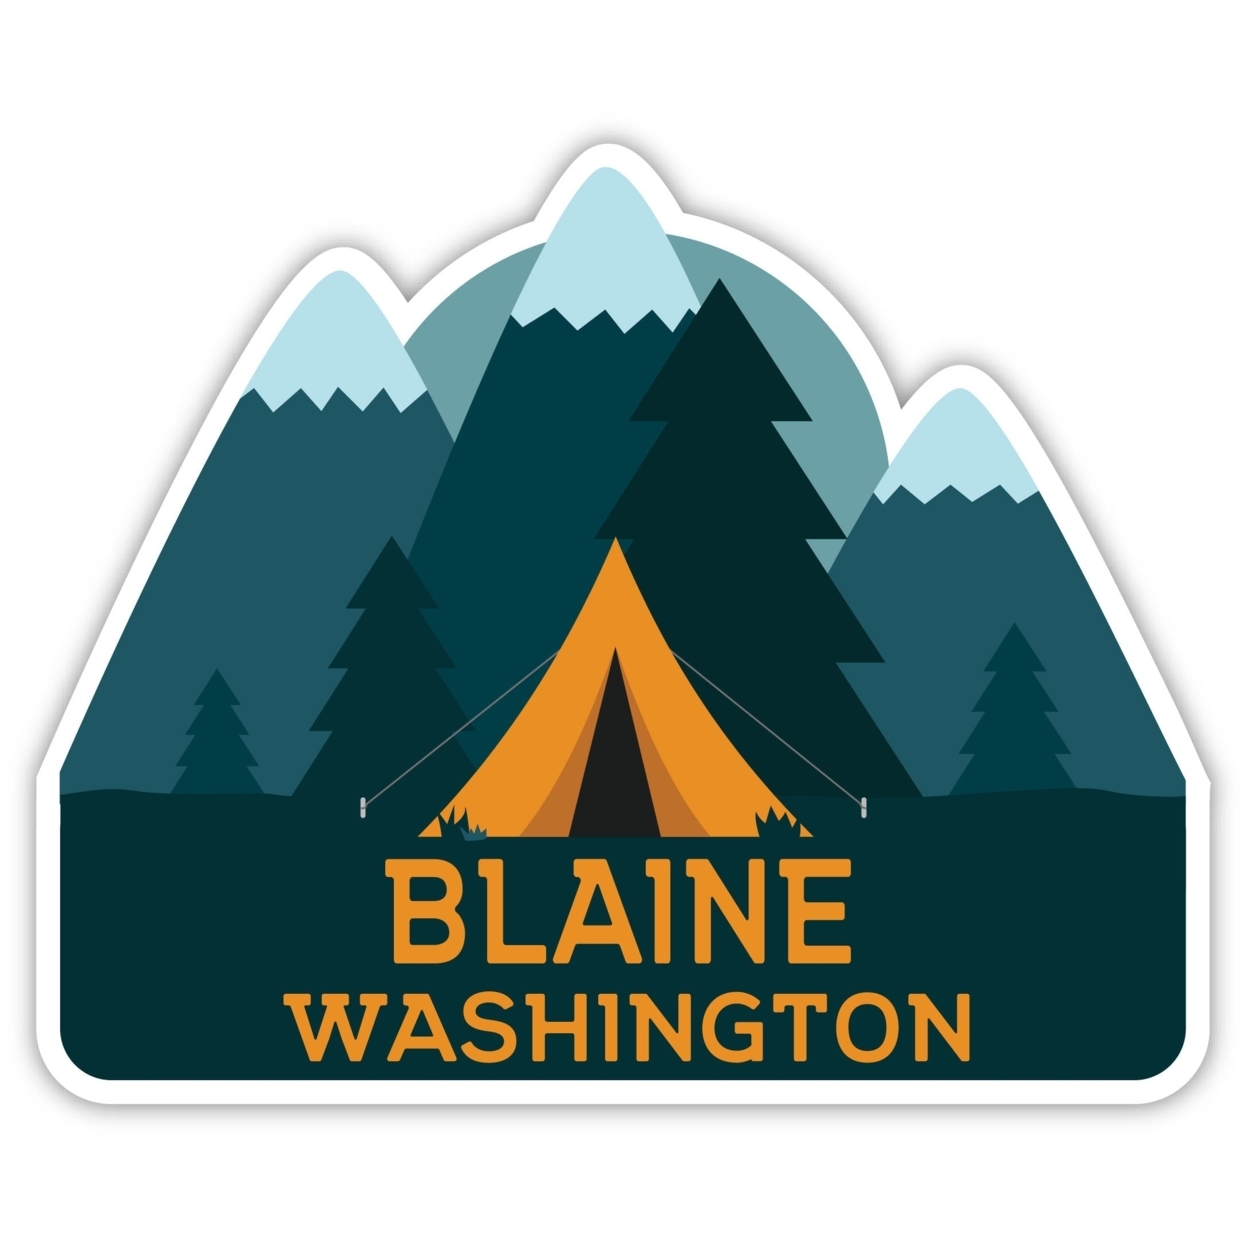 Blaine Washington Souvenir Decorative Stickers (Choose Theme And Size) - Single Unit, 2-Inch, Tent